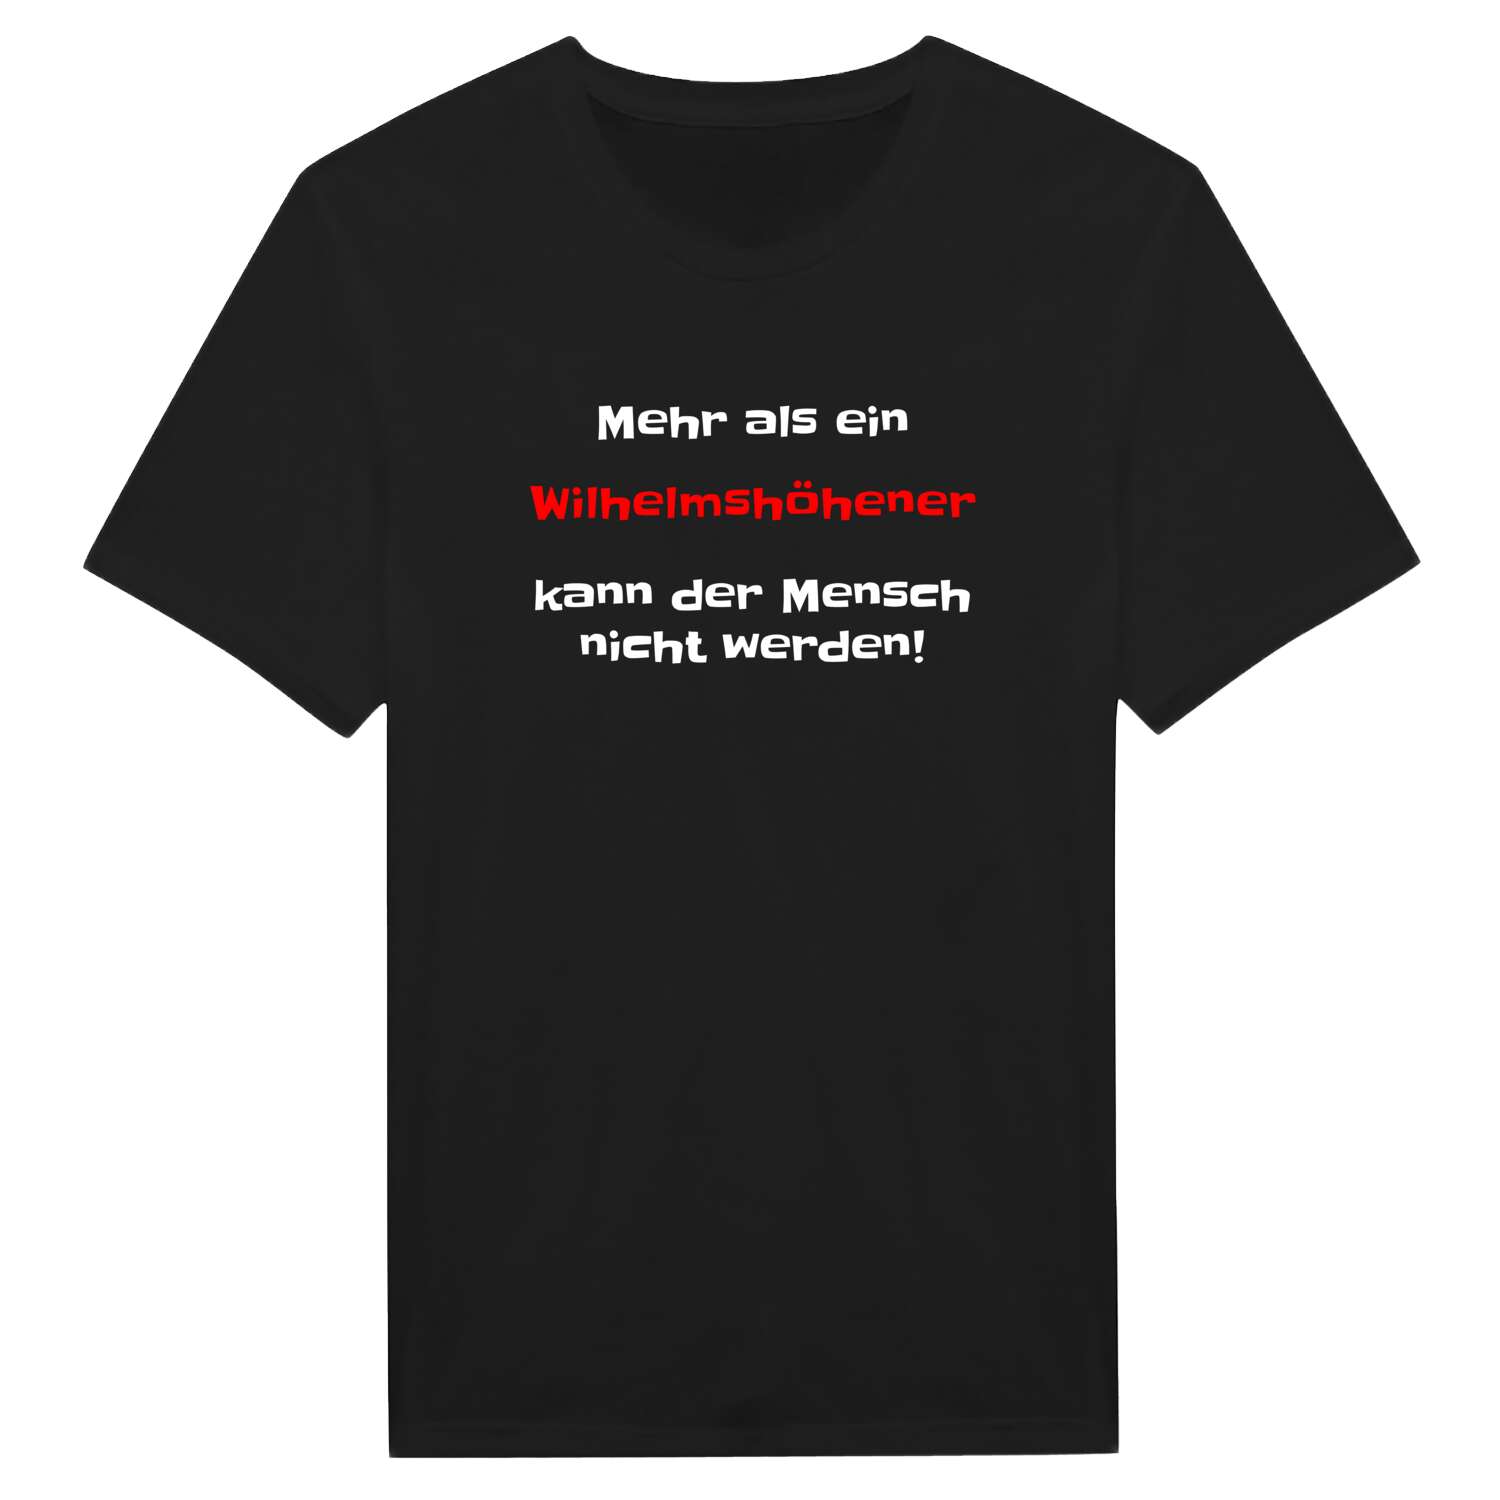 Wilhelmshöhe T-Shirt »Mehr als ein«